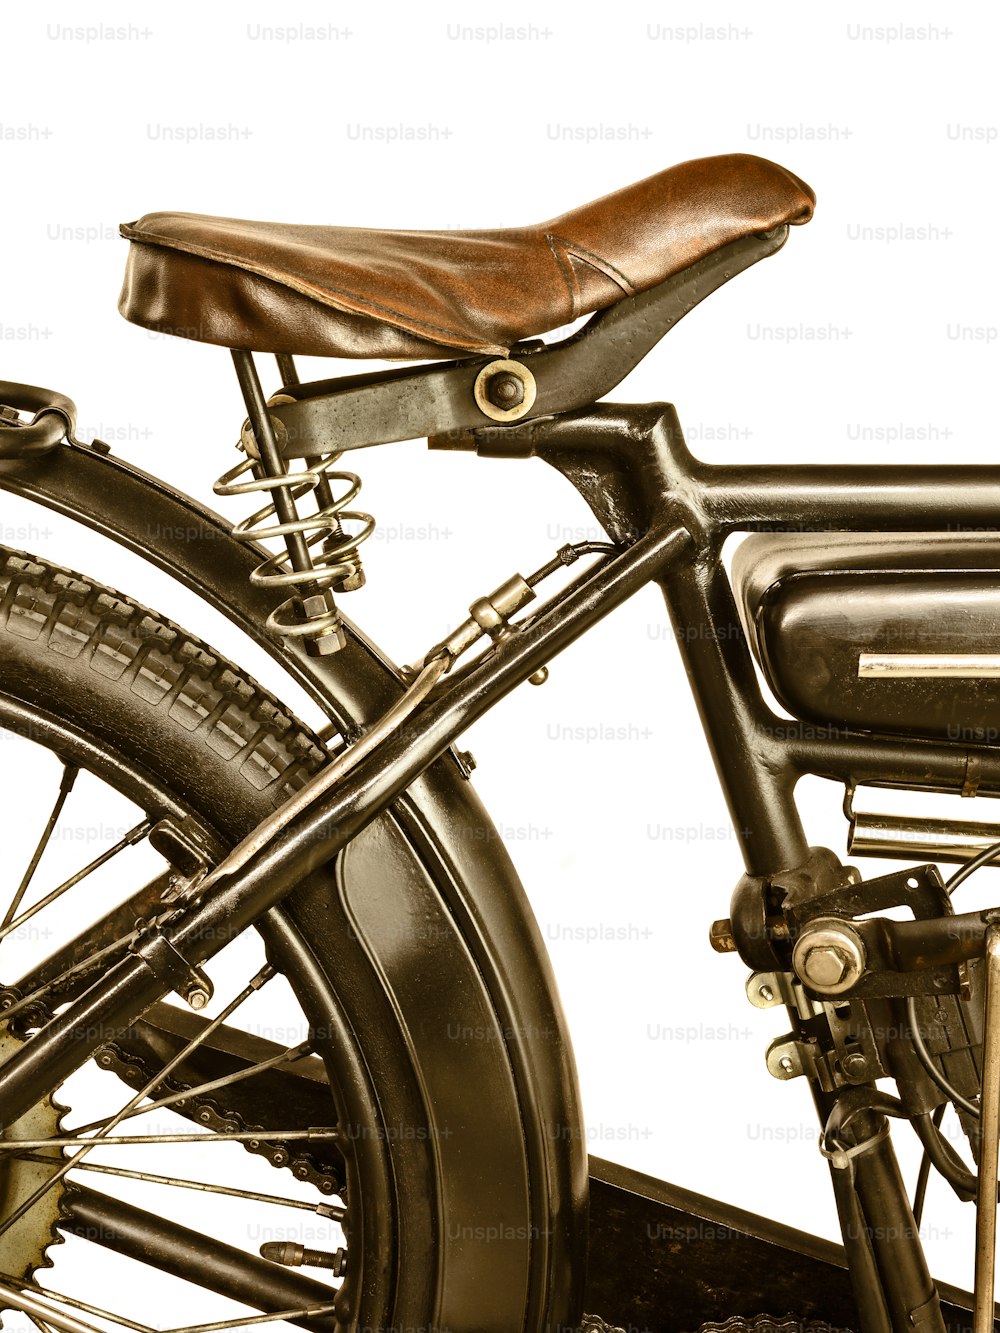 흰색 배경에 격리된 오토바이 안장의 복고풍 스타일 이미지